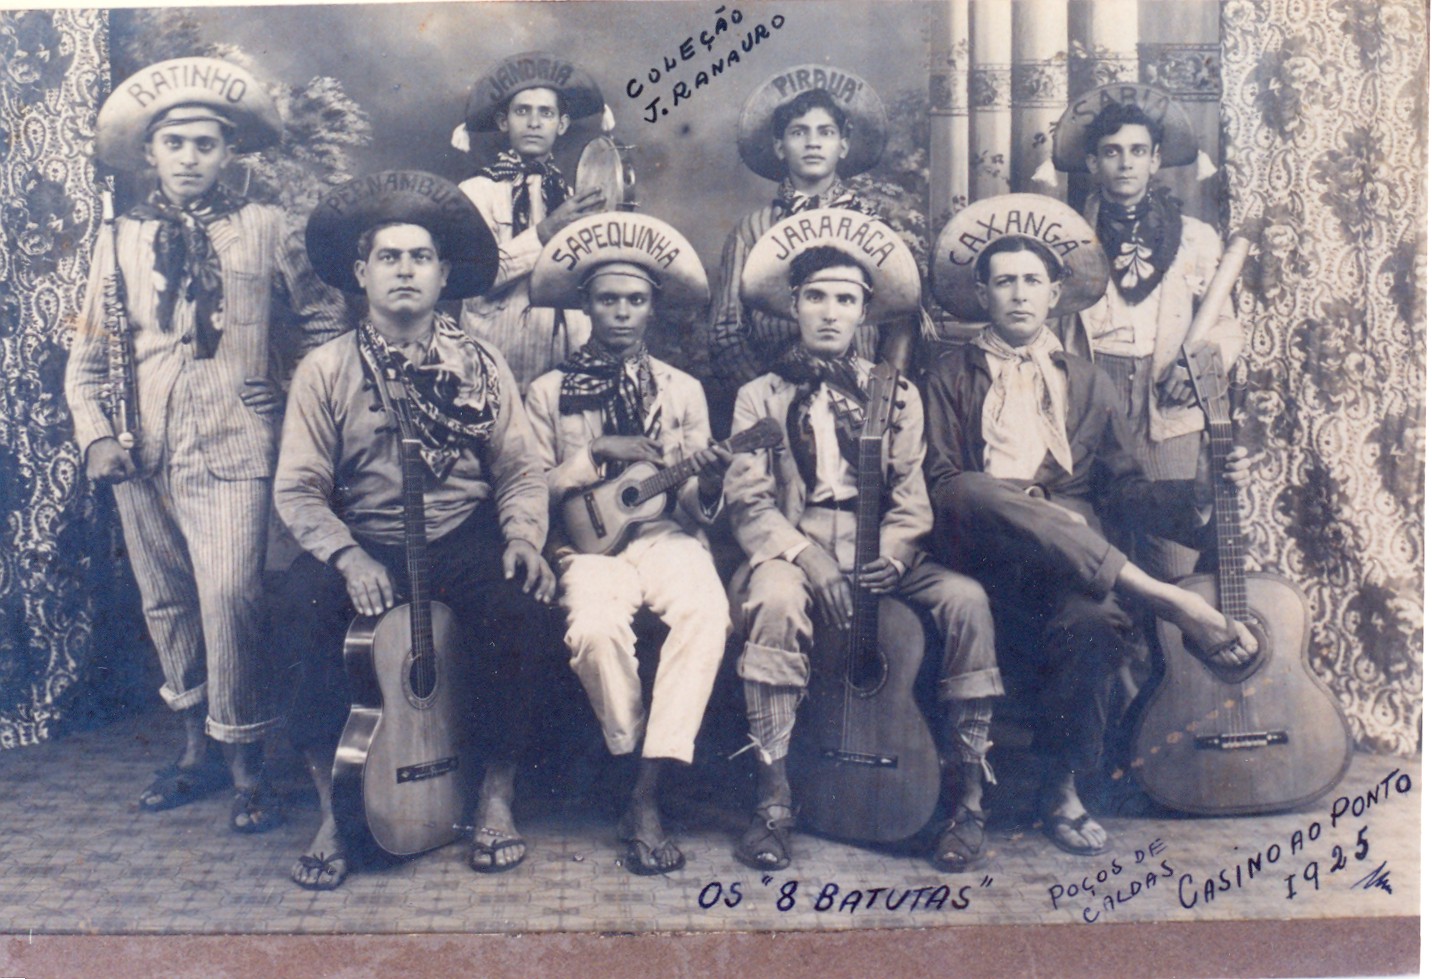 Grupo Musical "Os 8 Batutas"